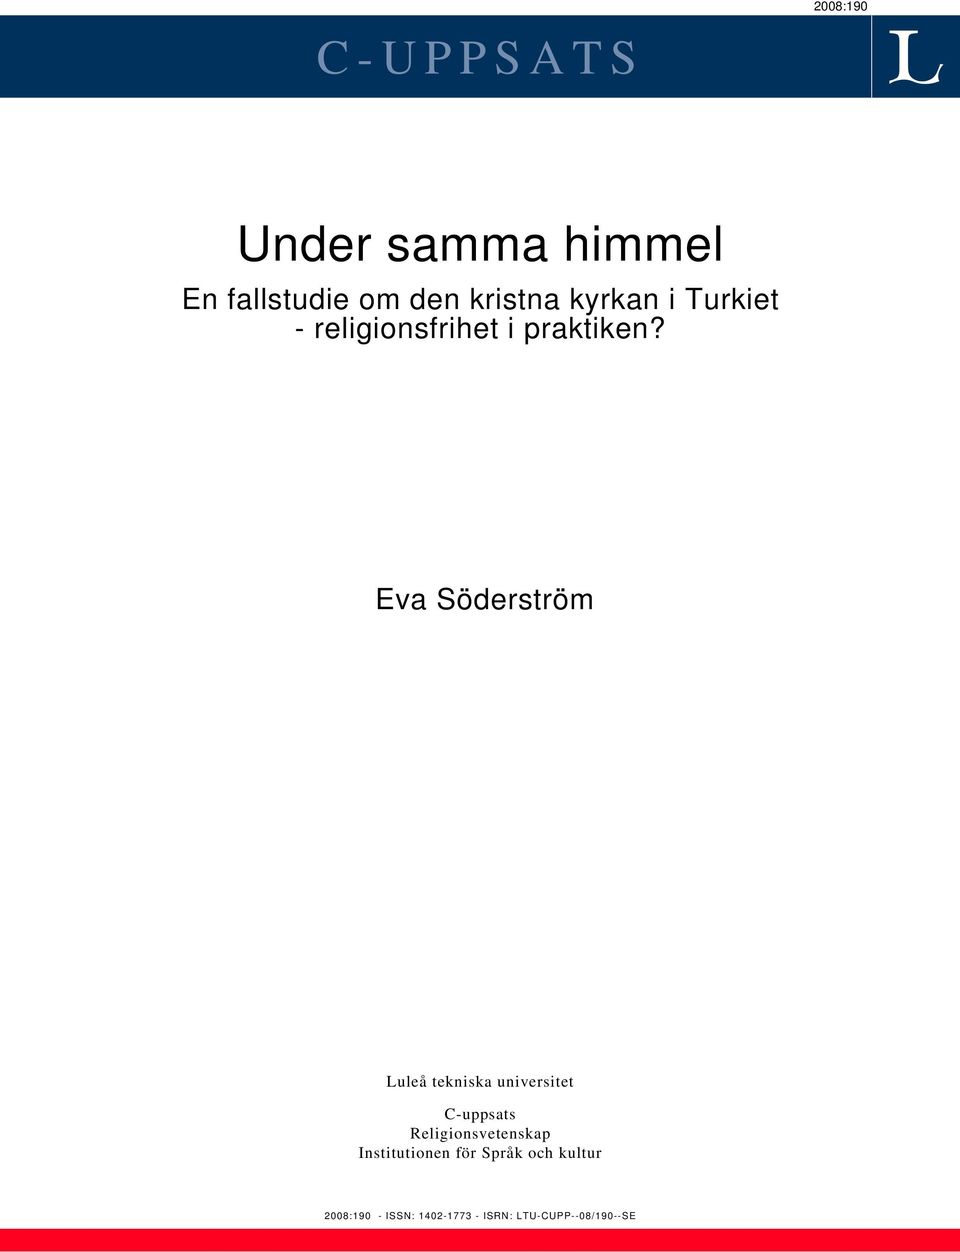 Eva Söderström Luleå tekniska universitet C-uppsats